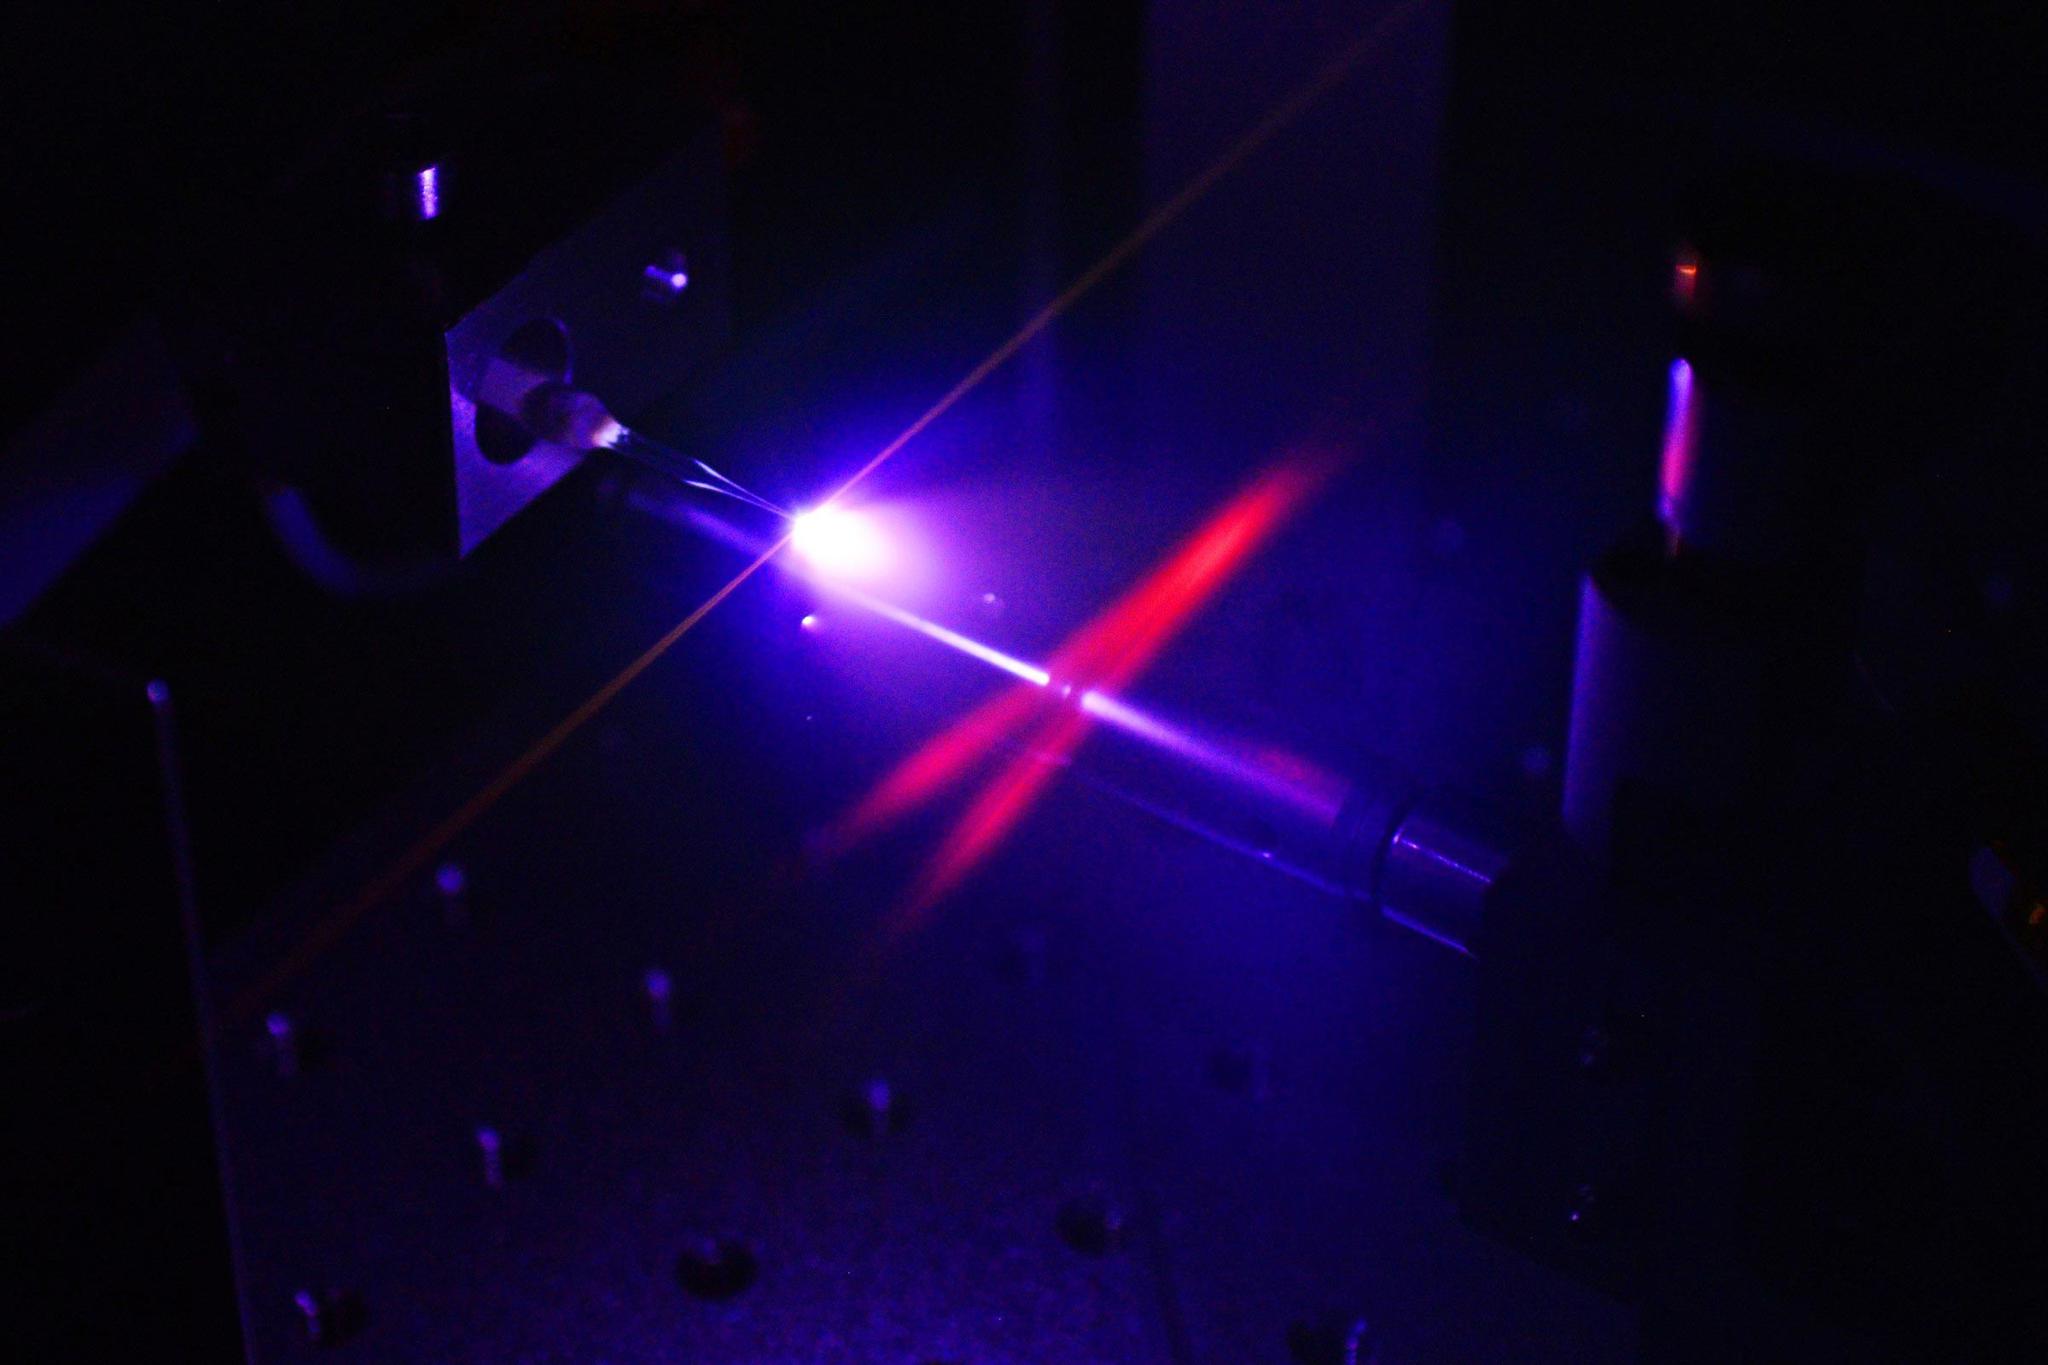 物理学家利用超短激光脉冲探测光辐射的动态变化